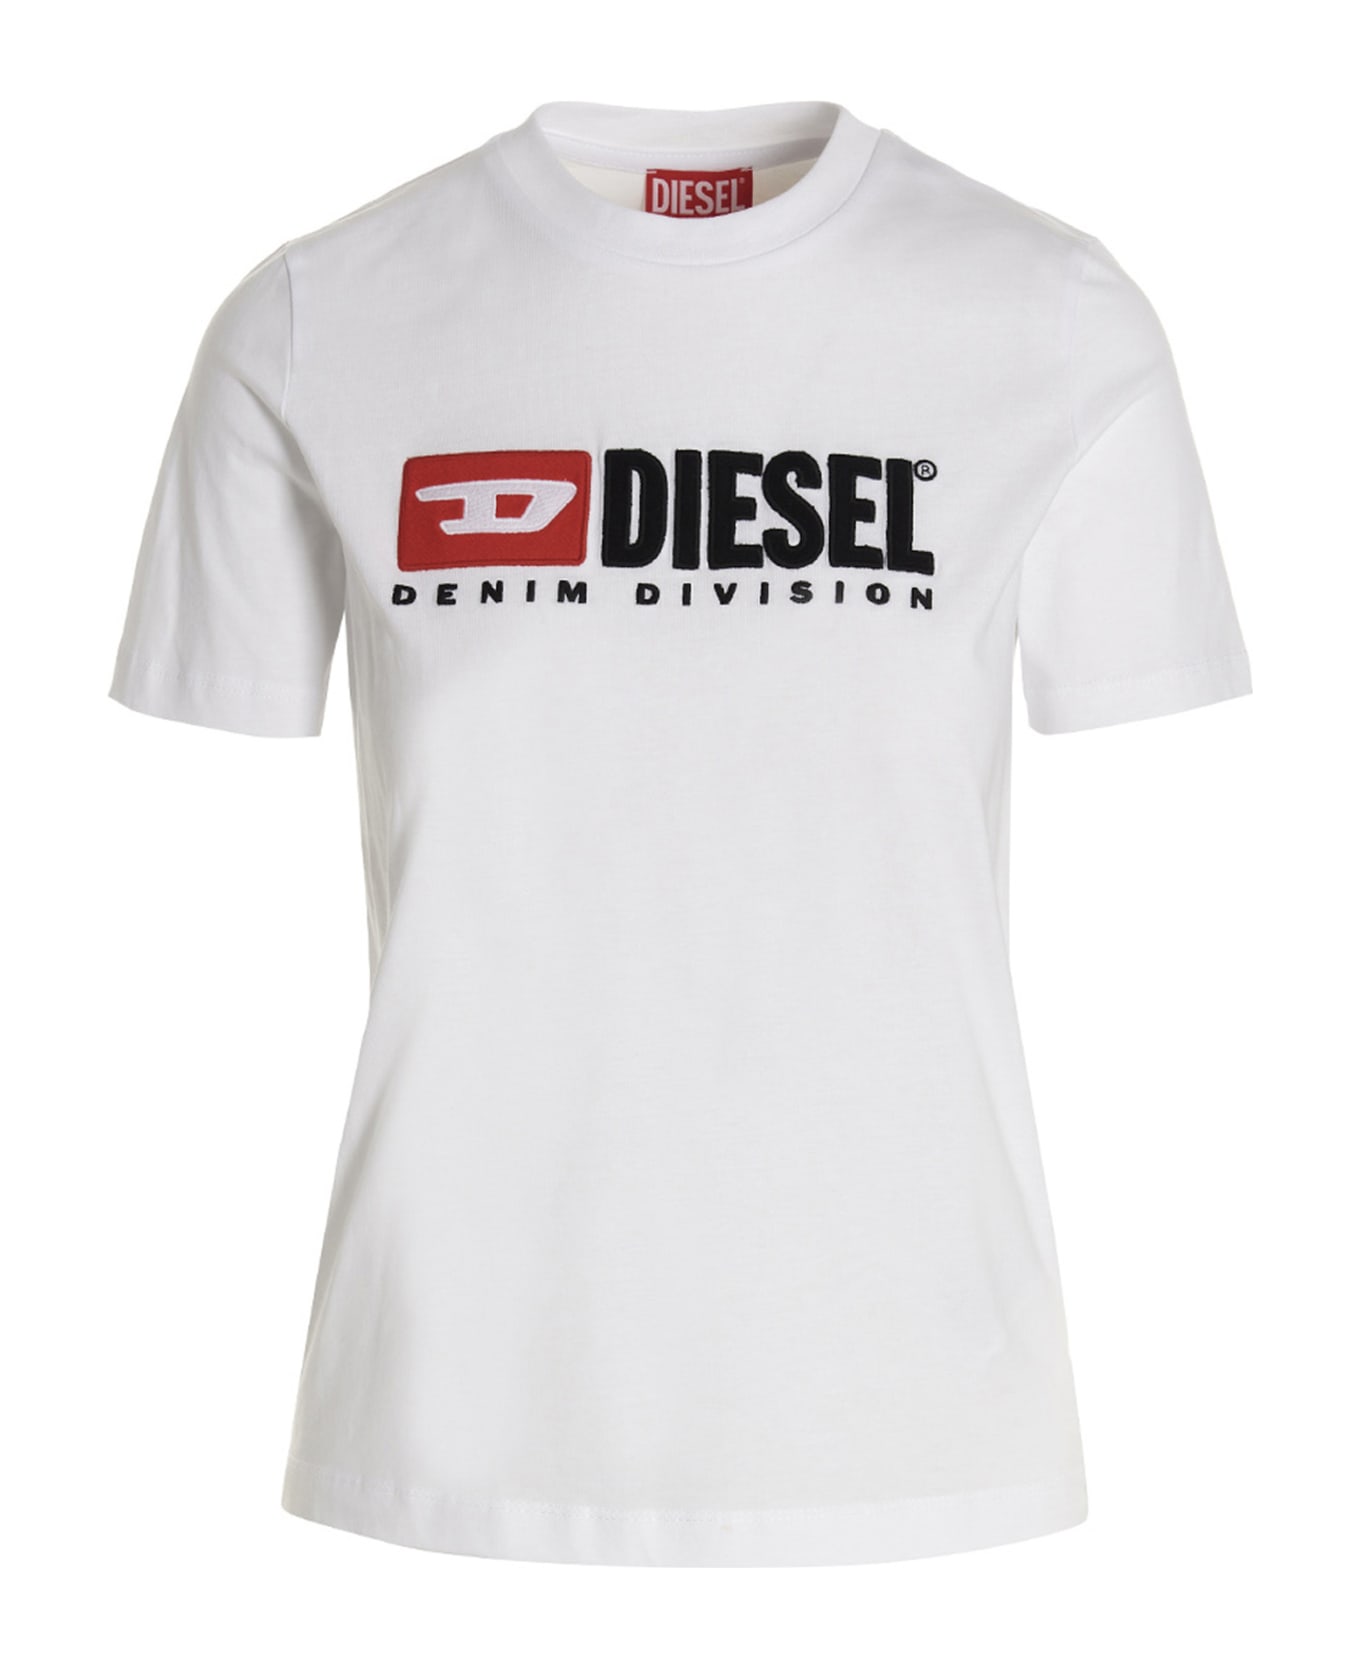 Diesel Logo T-shirt - White Tシャツ